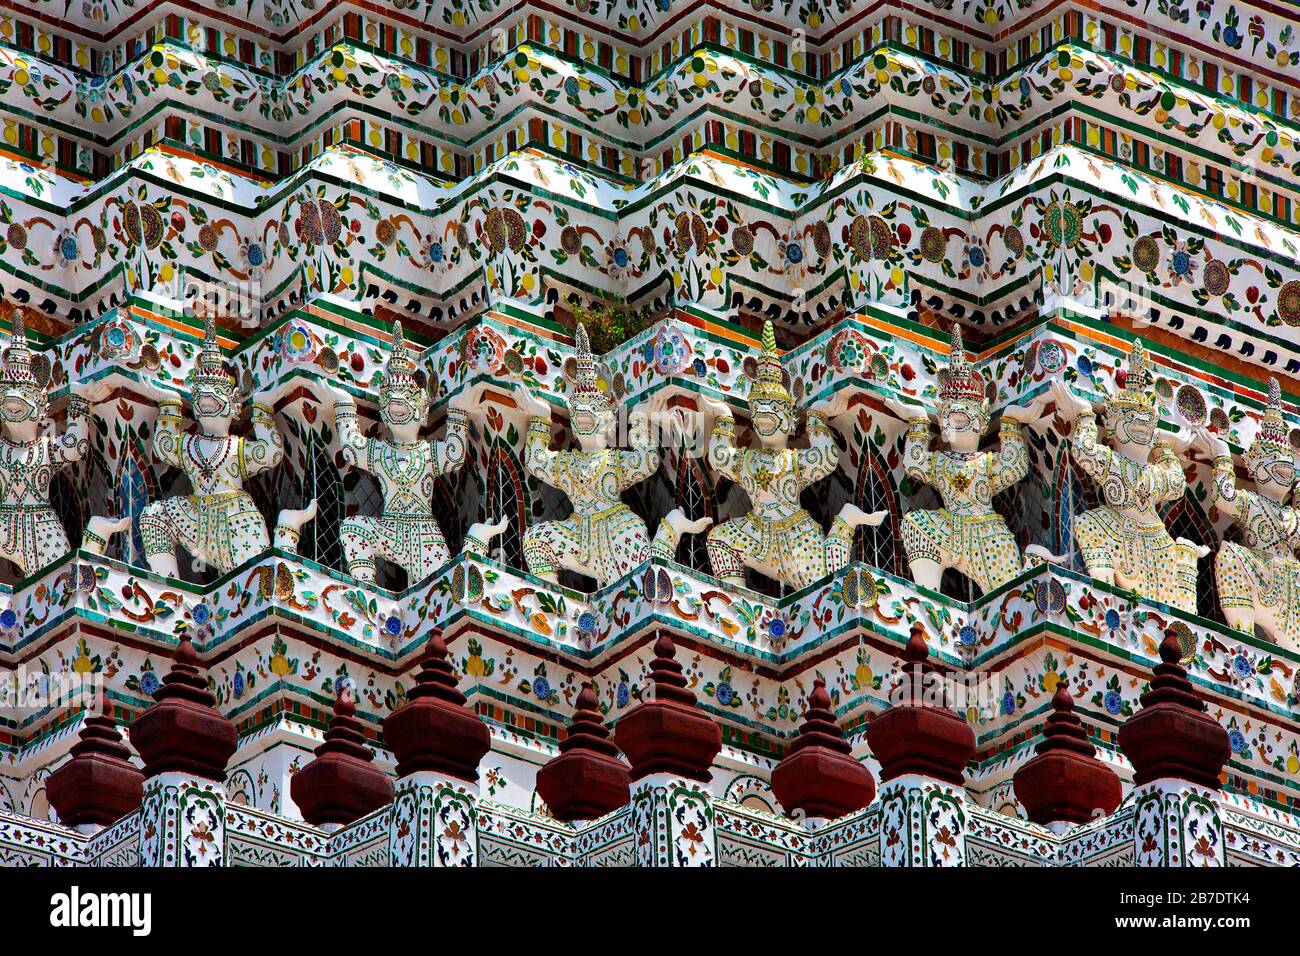 Dekorationsdetails im buddhistischen Tempel Wat Arun, in Bangkok, Thailand. Stockfoto